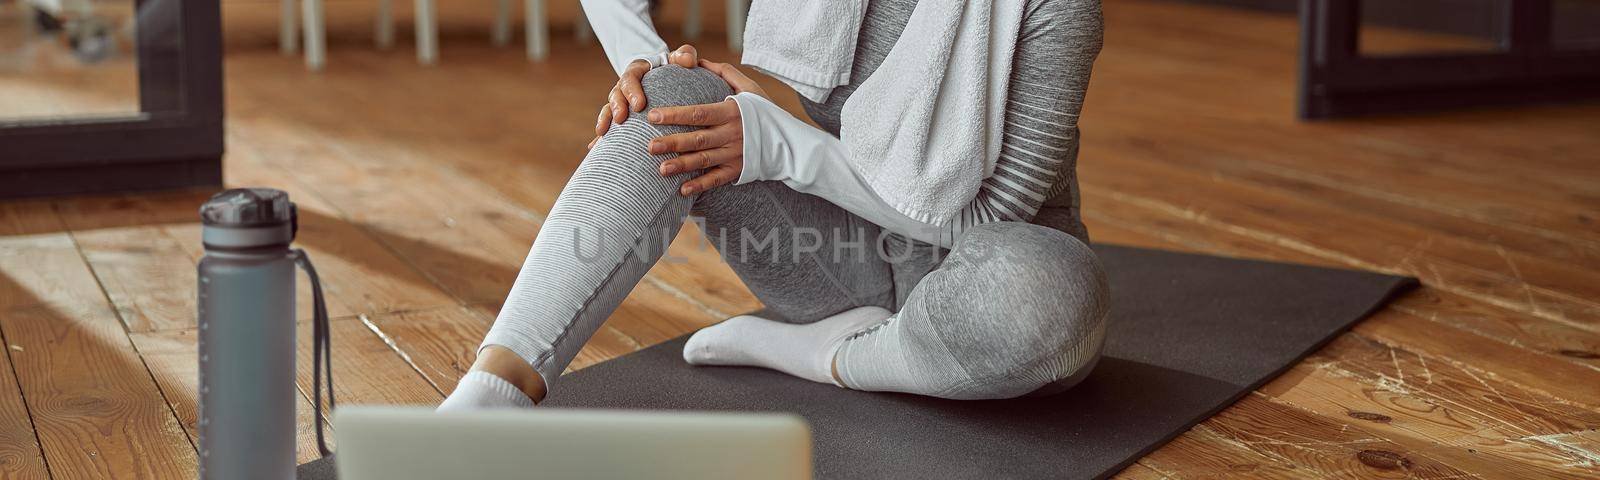 Slim woman hurting knee during online training by Yaroslav_astakhov